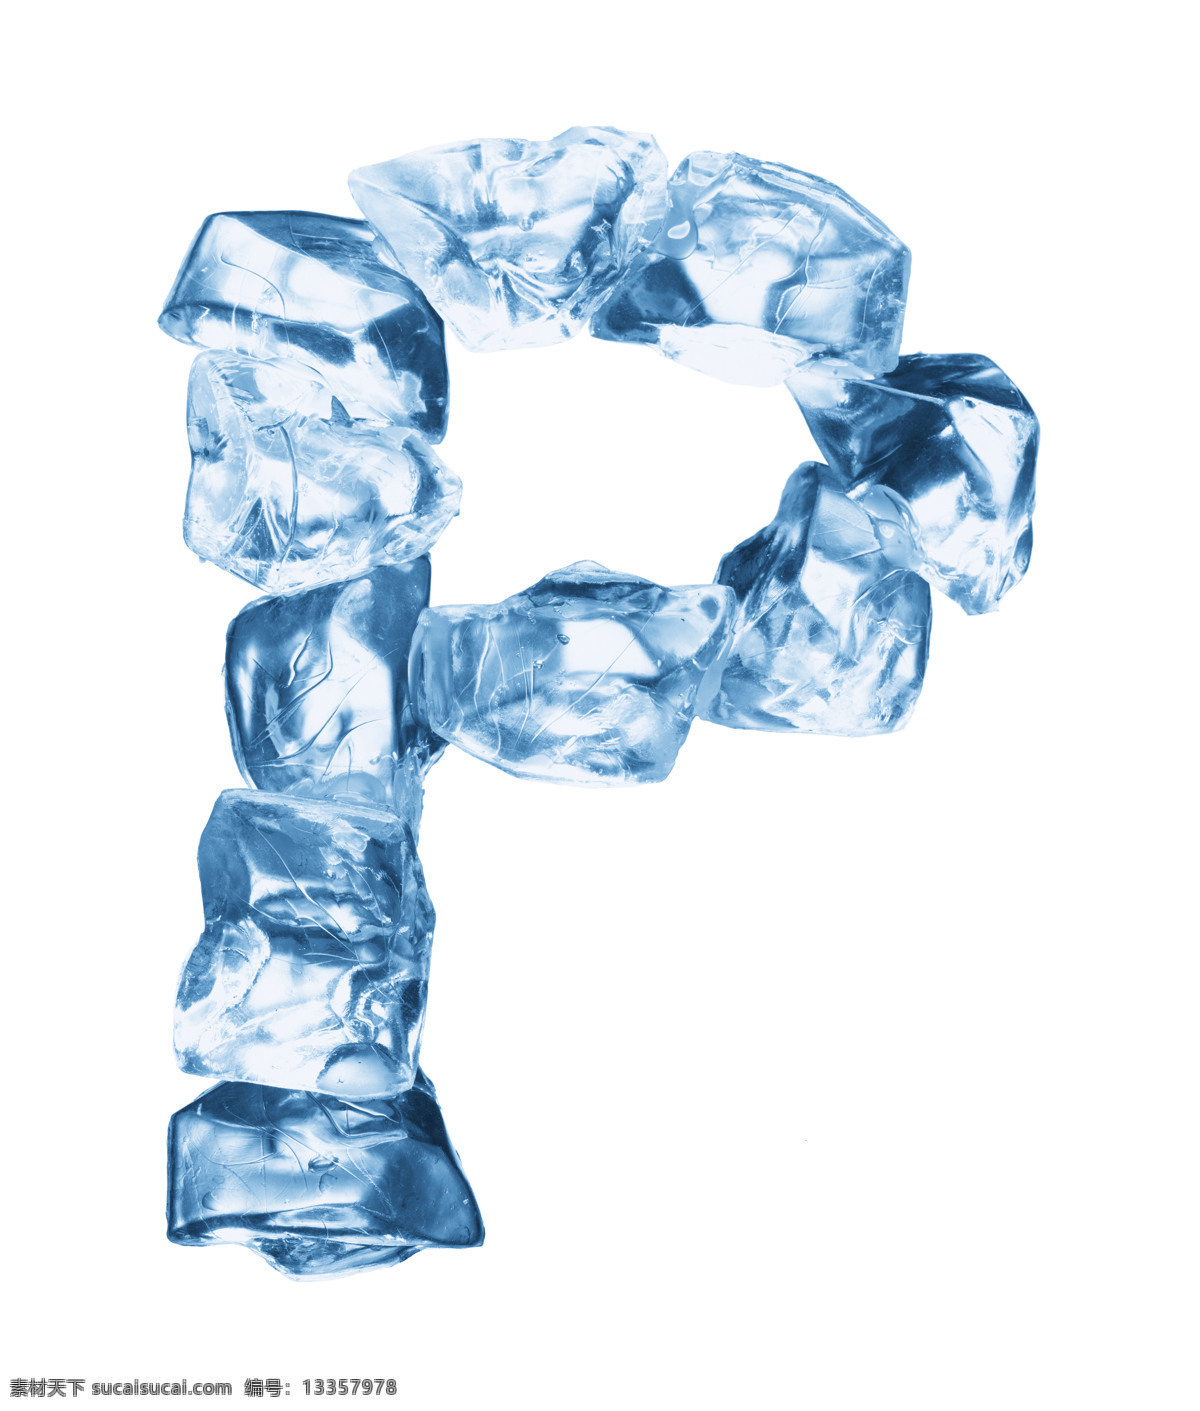 冰块字母p 冰块 字母p 冰晶体 英文字母设计 艺术字 字体设计 立体字 书画文字 文化艺术 白色